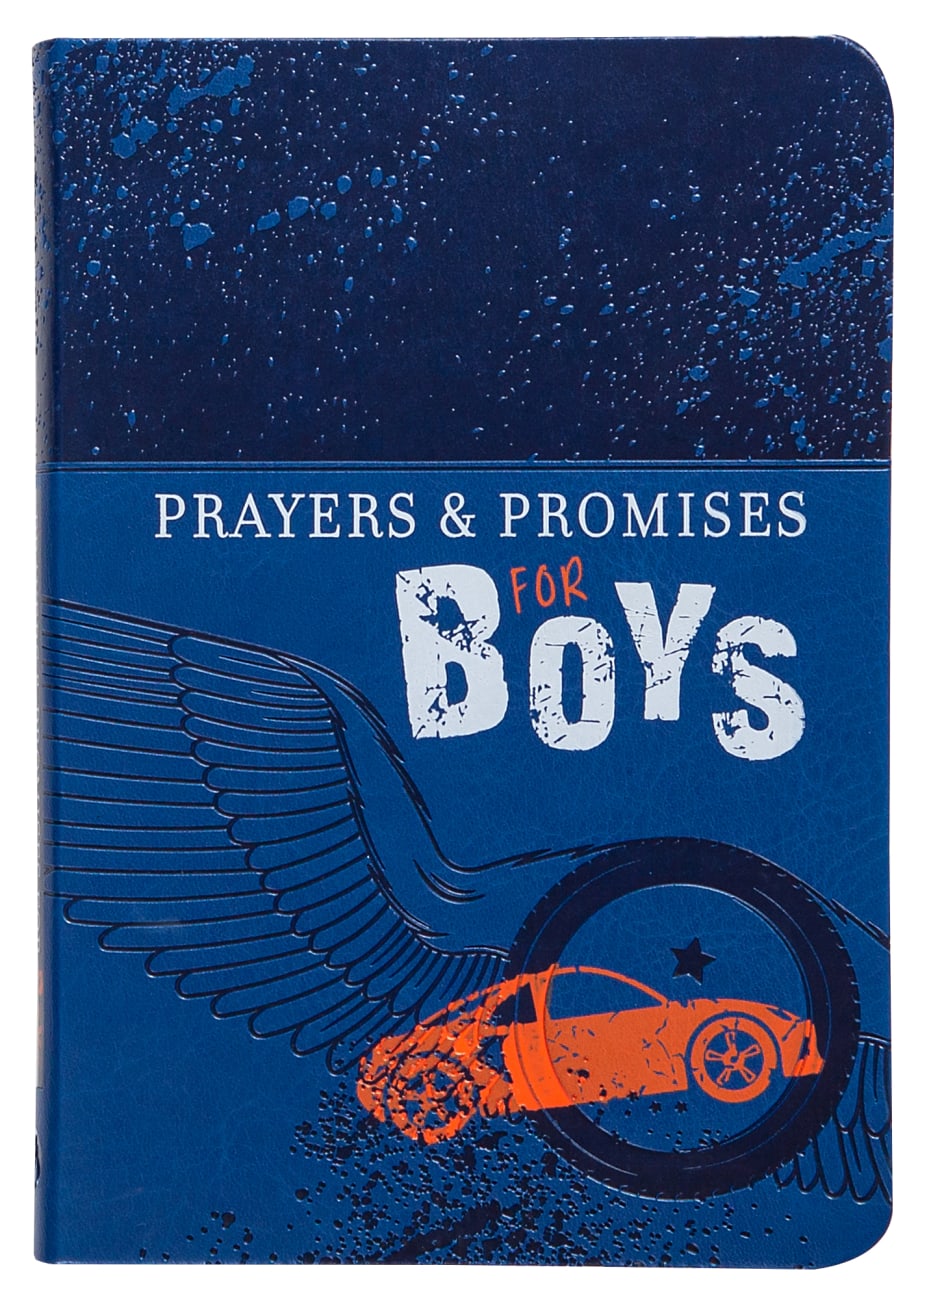 PRAYERS & PROMISES FOR BOYS